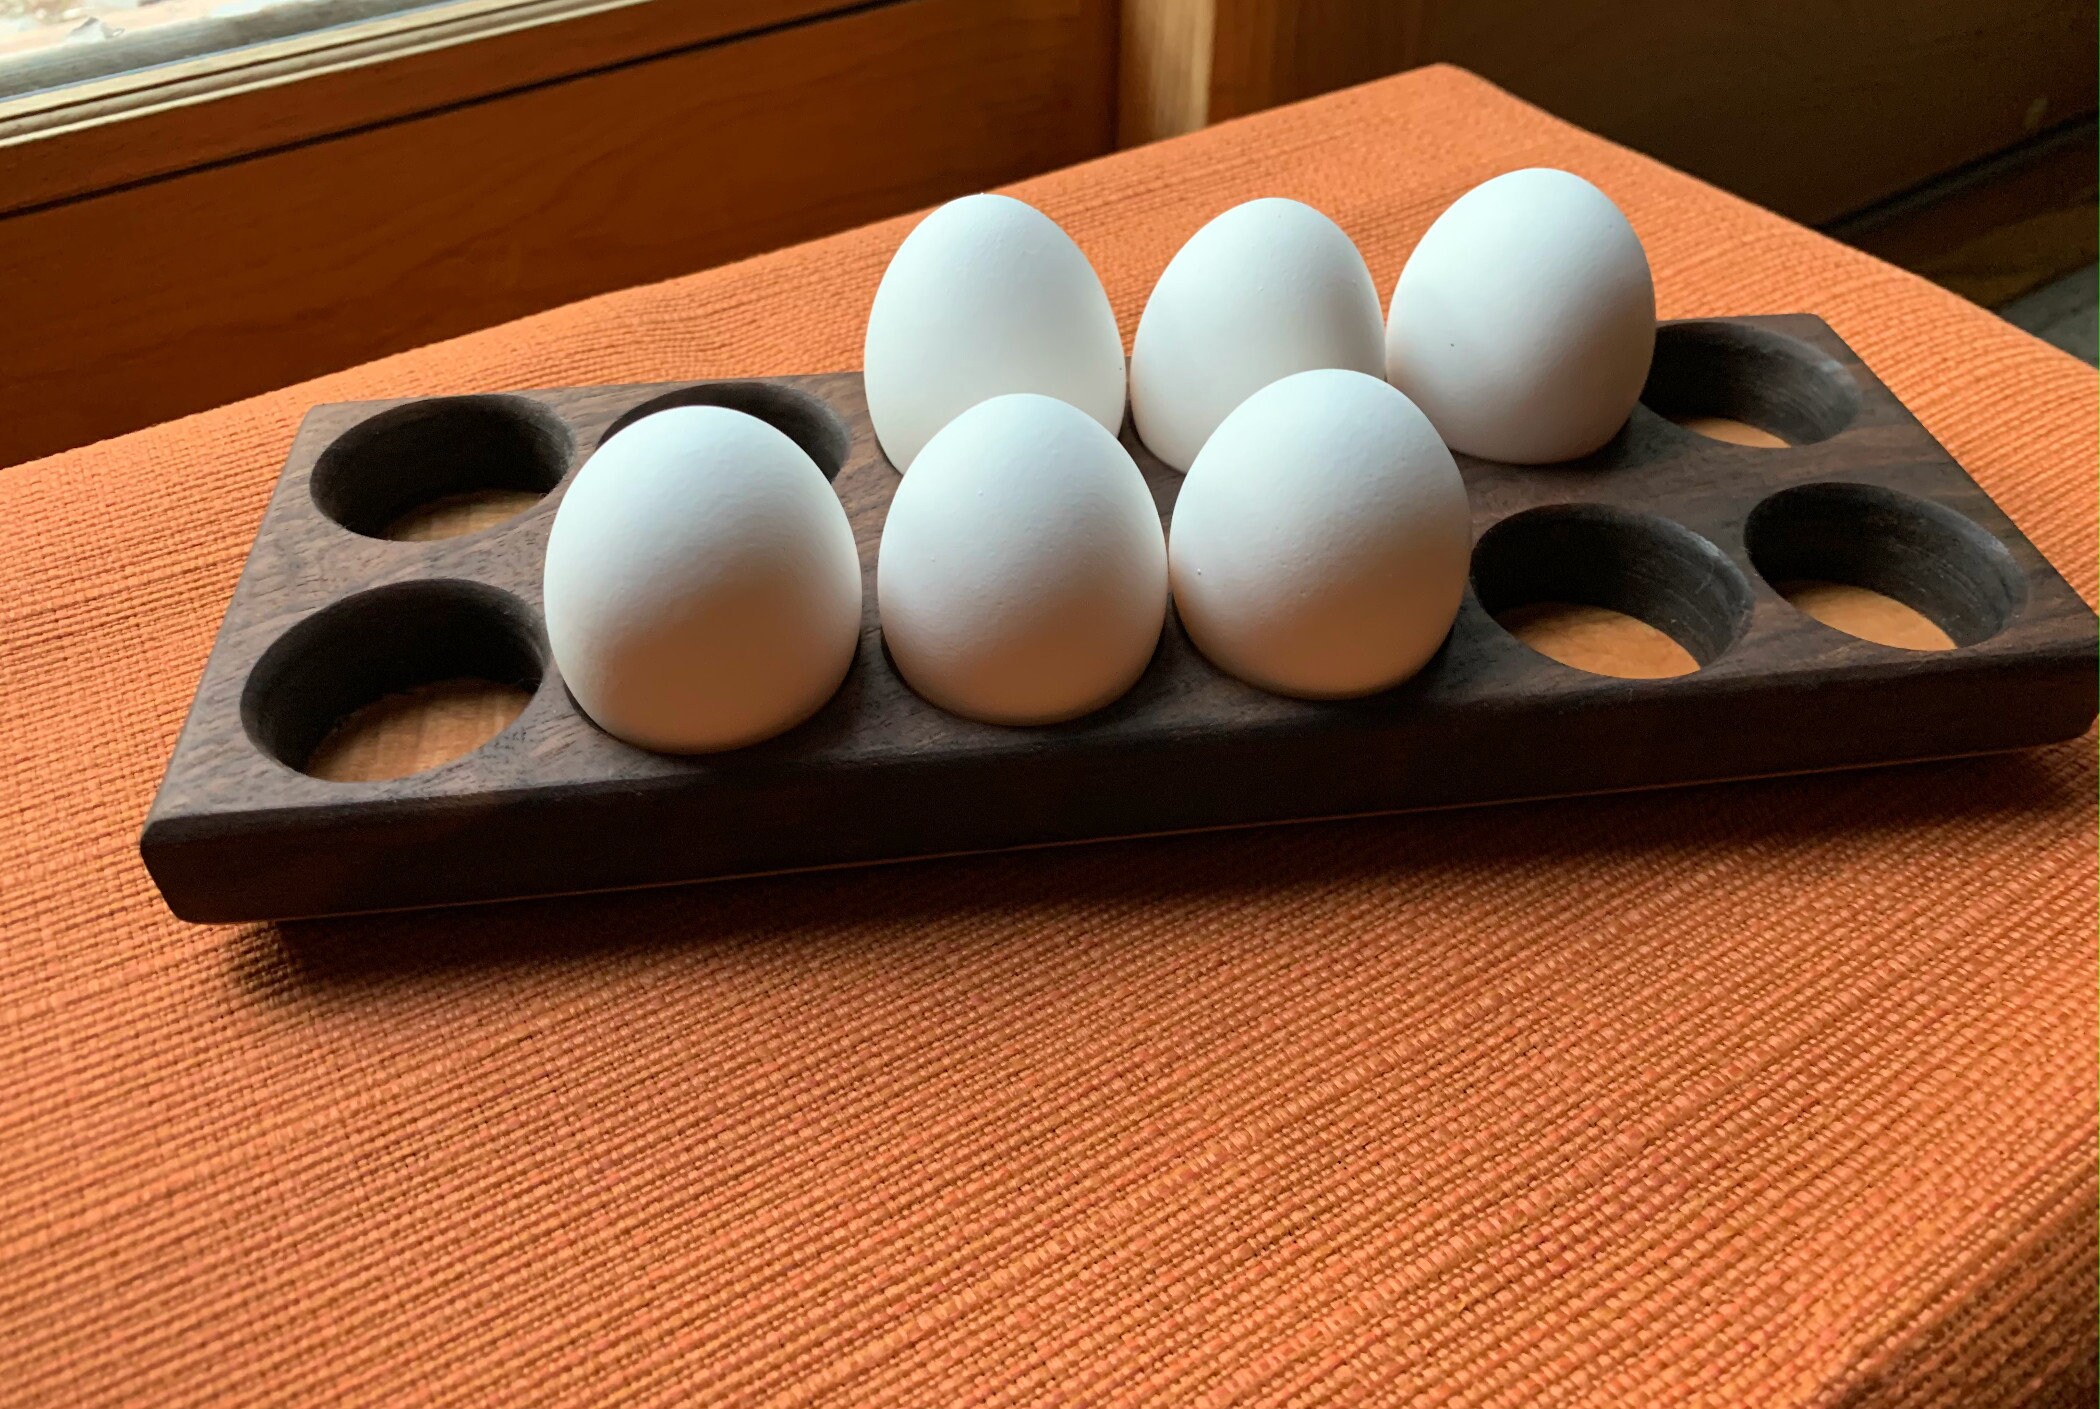 Modern Egg Basket Display Tray Holder for Gathering Fresh Eggs